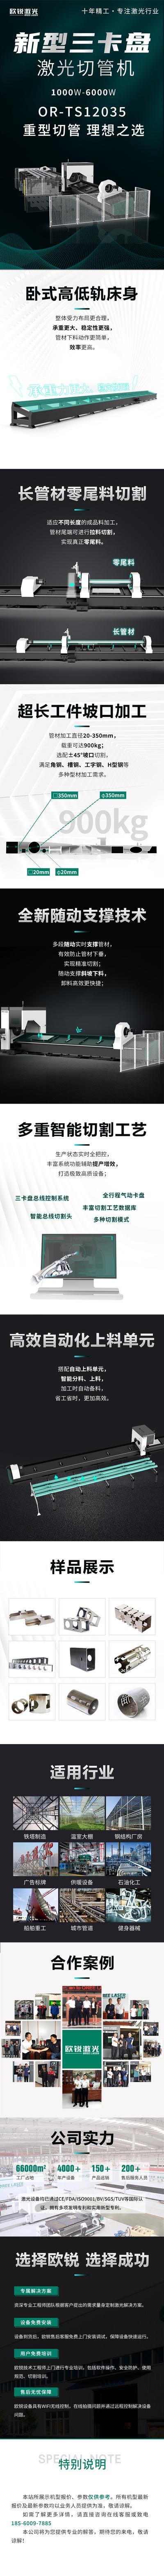 南门网 广告 海报 电商 详情页 机械 激光 长图